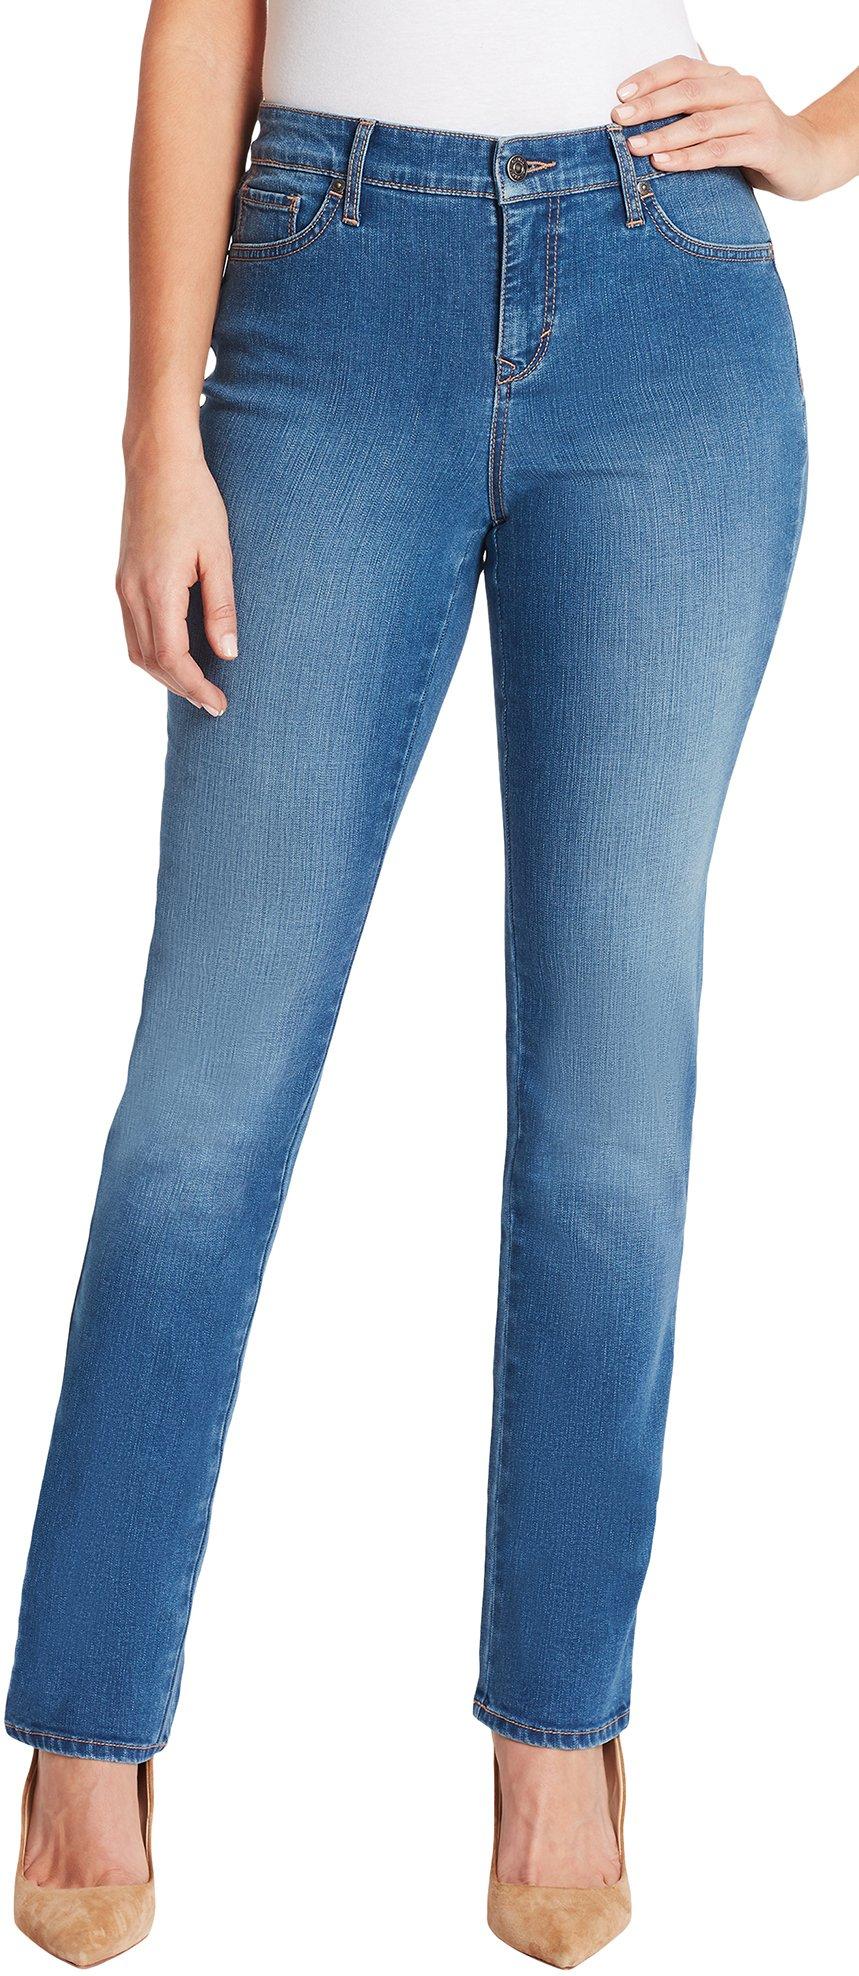 bealls gloria vanderbilt amanda jeans